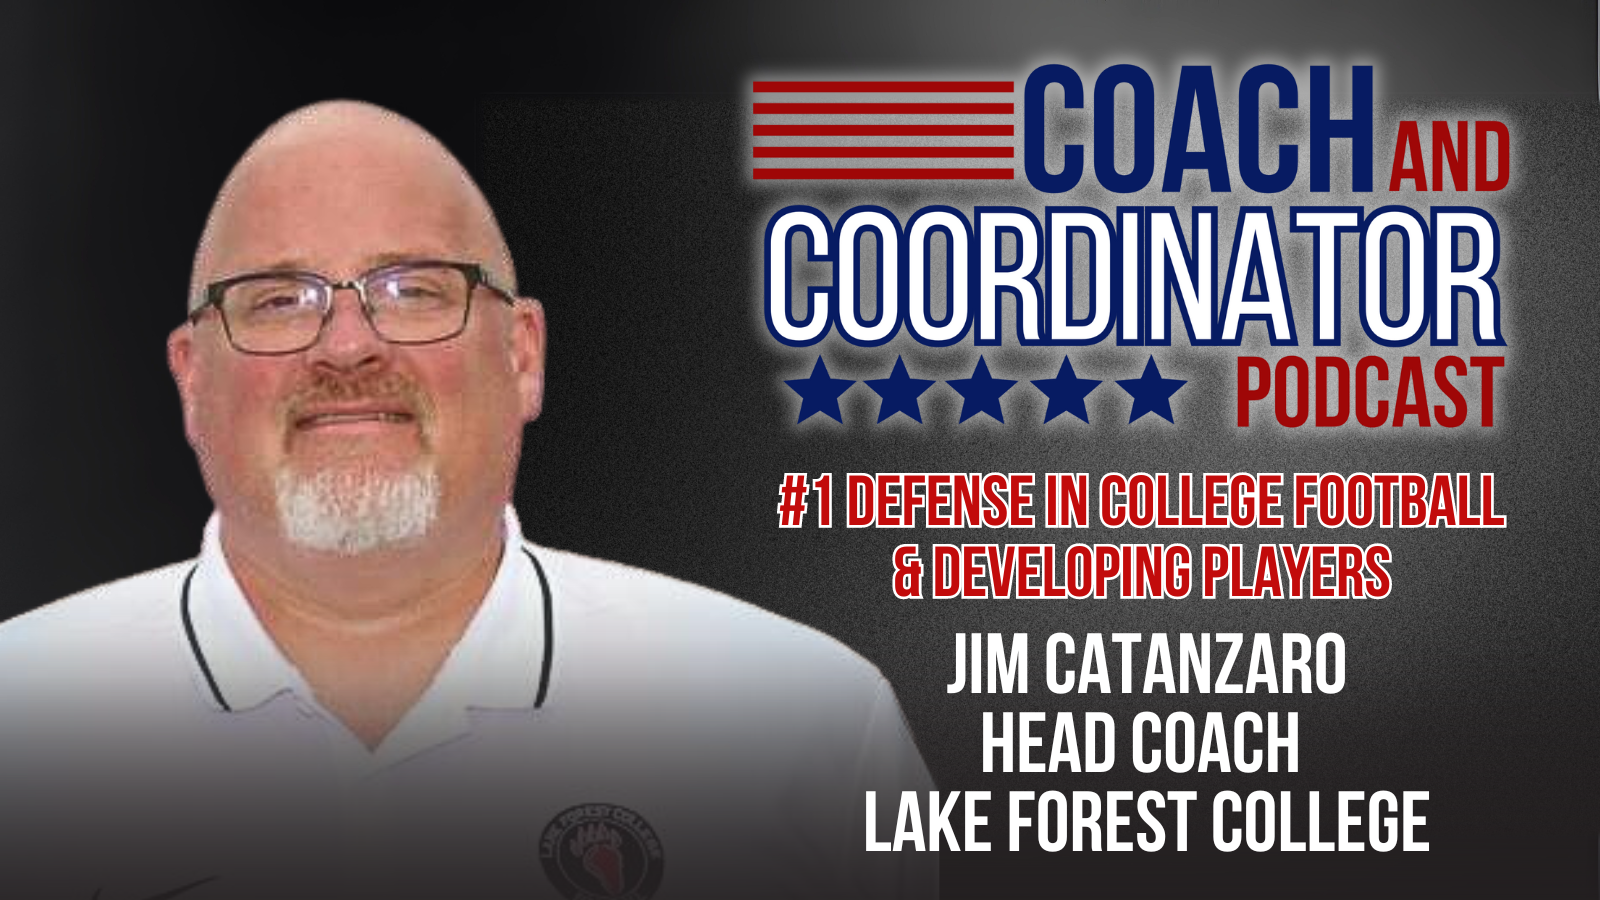 Jim Catanzaro, Head Coach, Lake Forest College